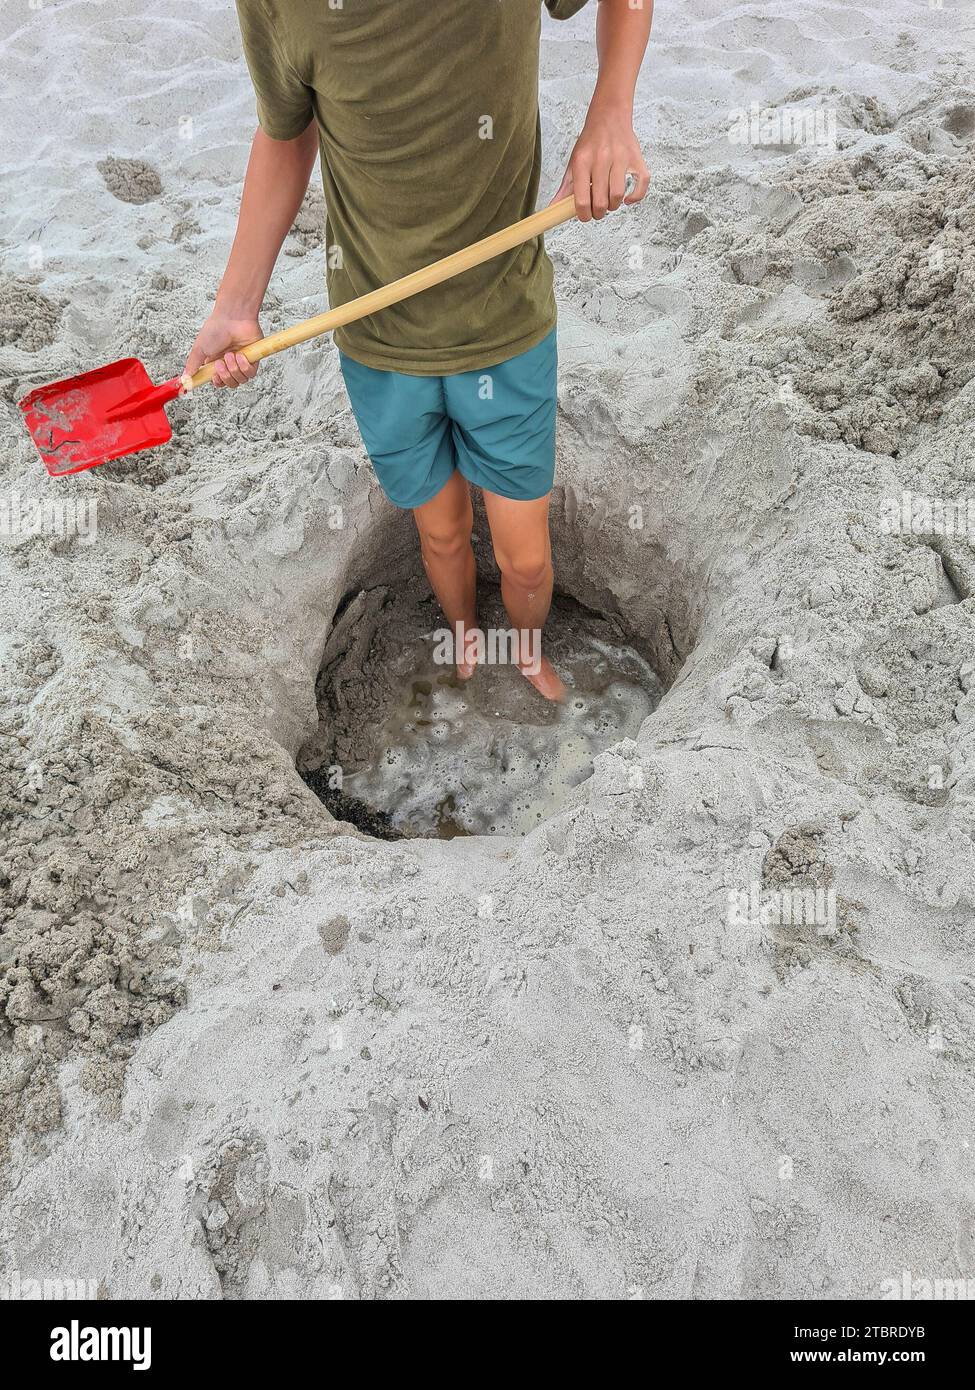 Alemania, Mecklemburgo-Pomerania Occidental, península Fischland-Darß-Zingst, Prerow, un adolescente se encuentra en un agujero de arena en la playa con una pala en la mano Foto de stock